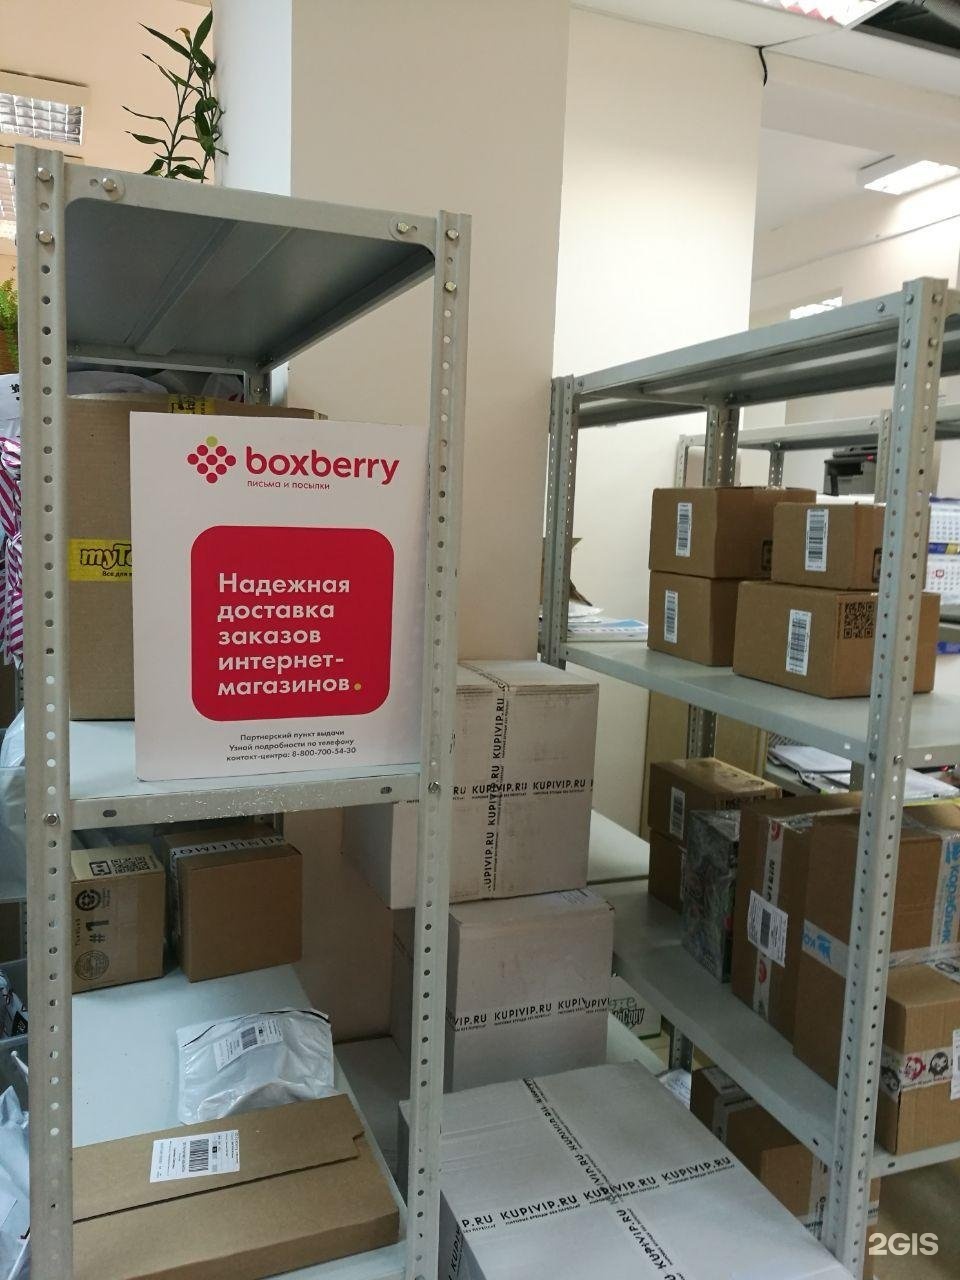 Boxberry в москве рядом со мной. Boxberry. ПВЗ Boxberry. Служба доставки Boxberry. Boxberry логотип.